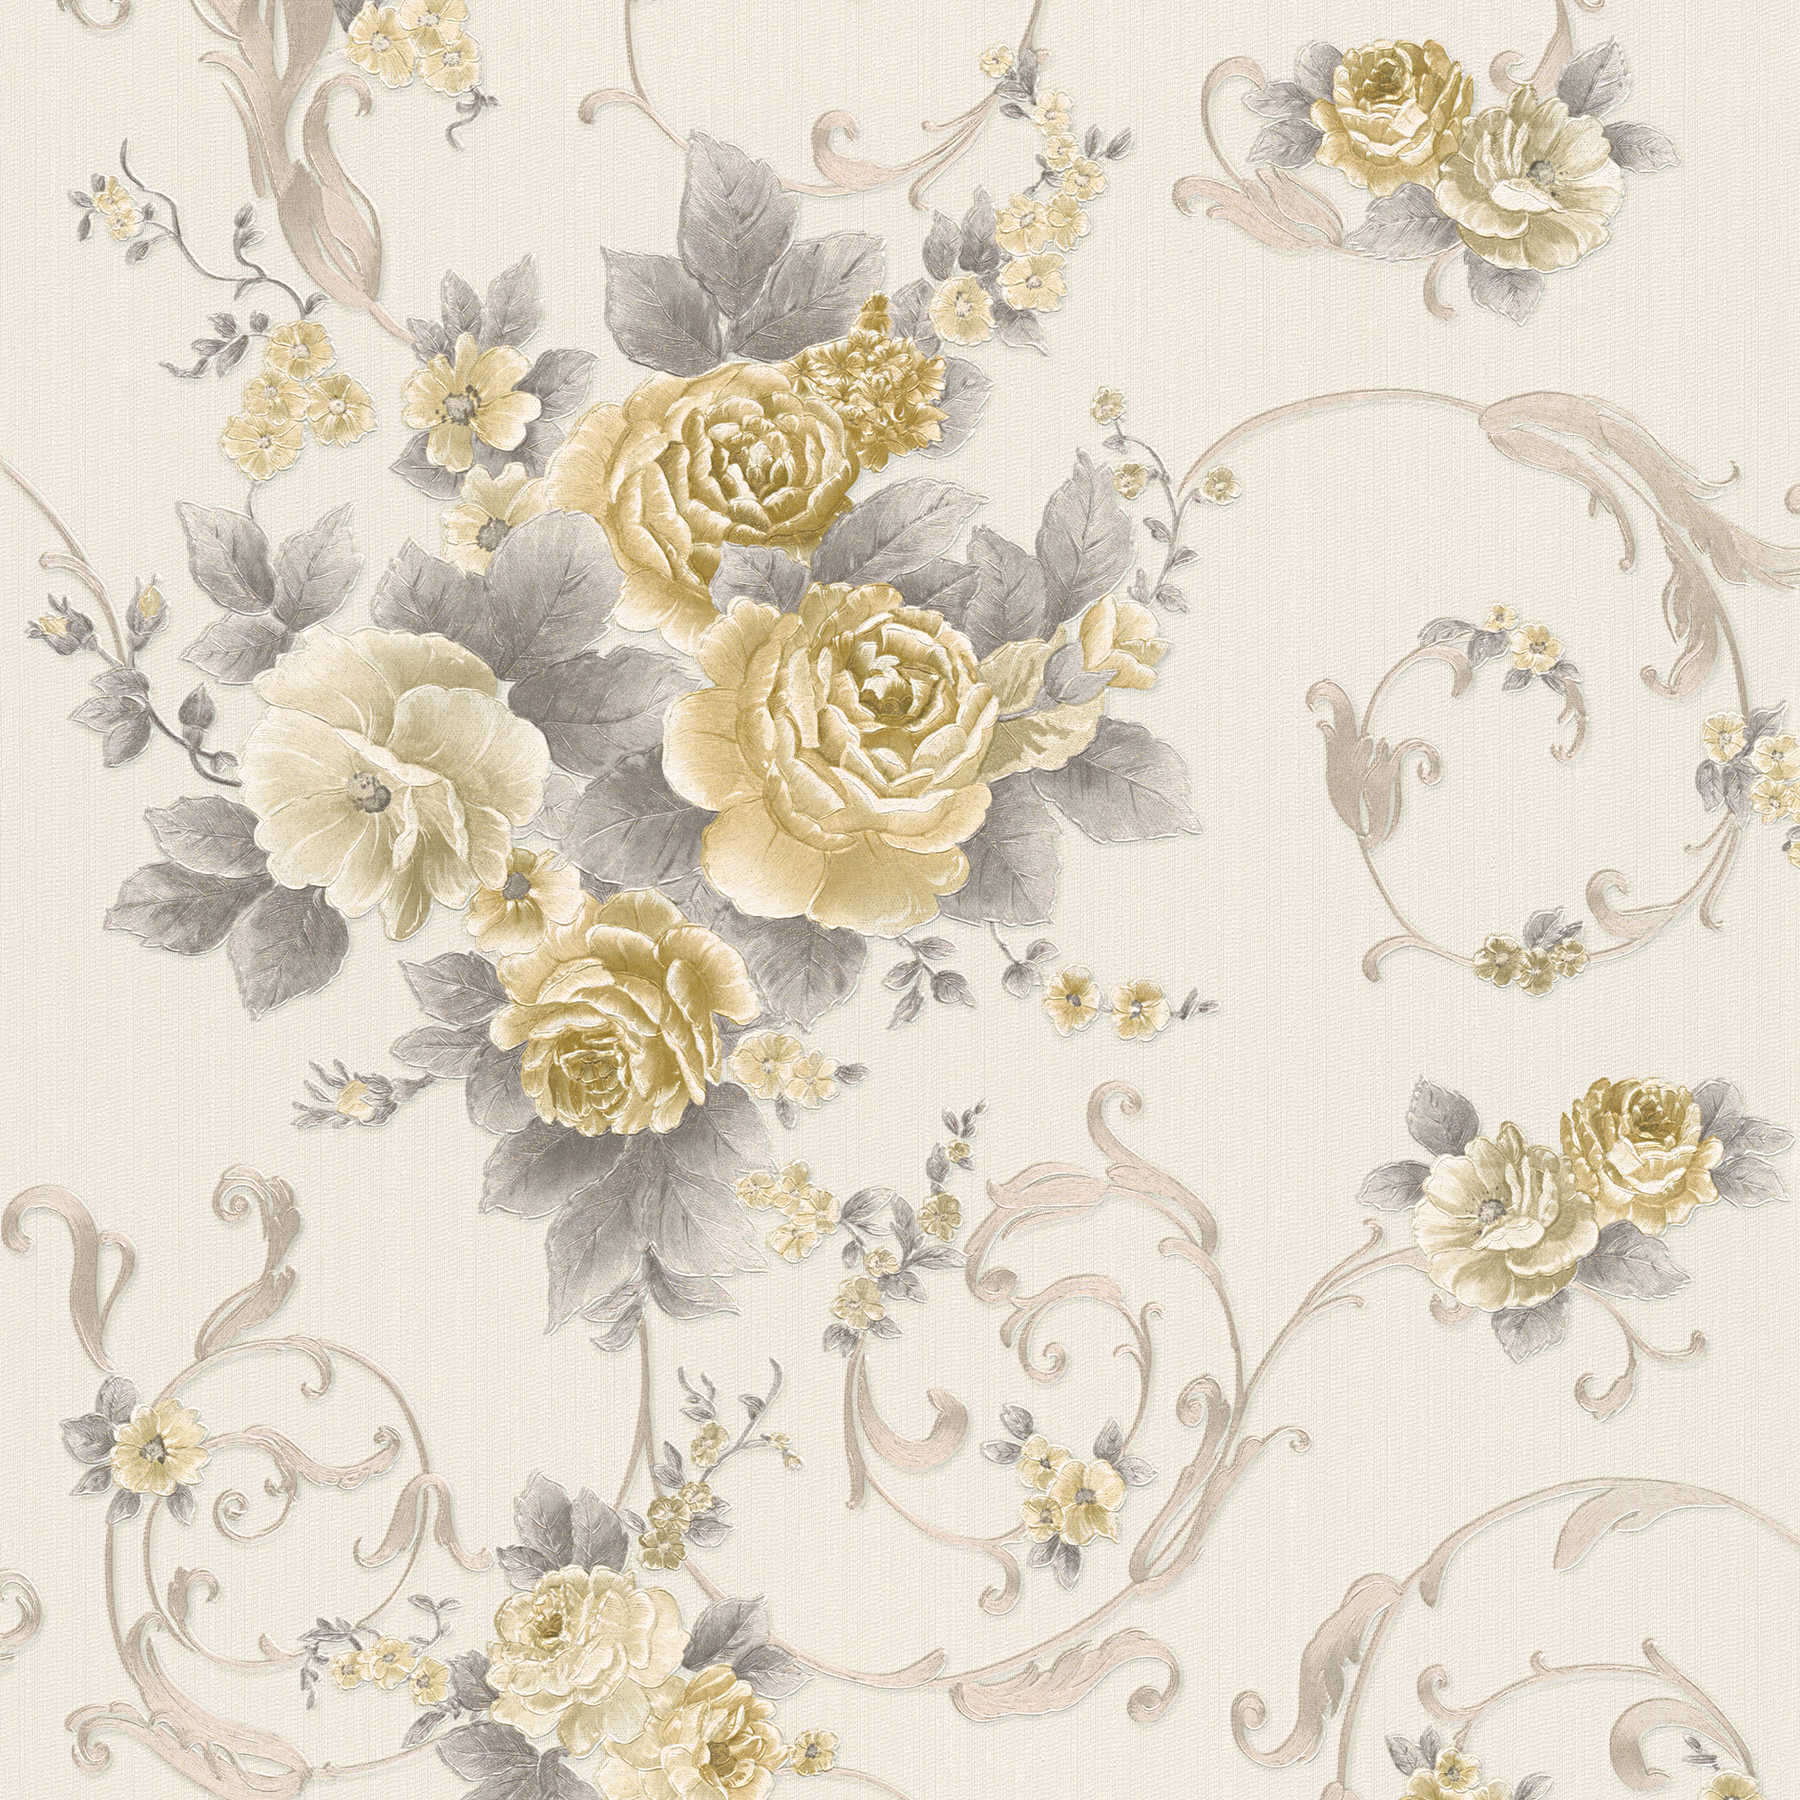 Carta da parati a petali di rosa con effetto metallizzato in stile country - grigio, oro, bianco
